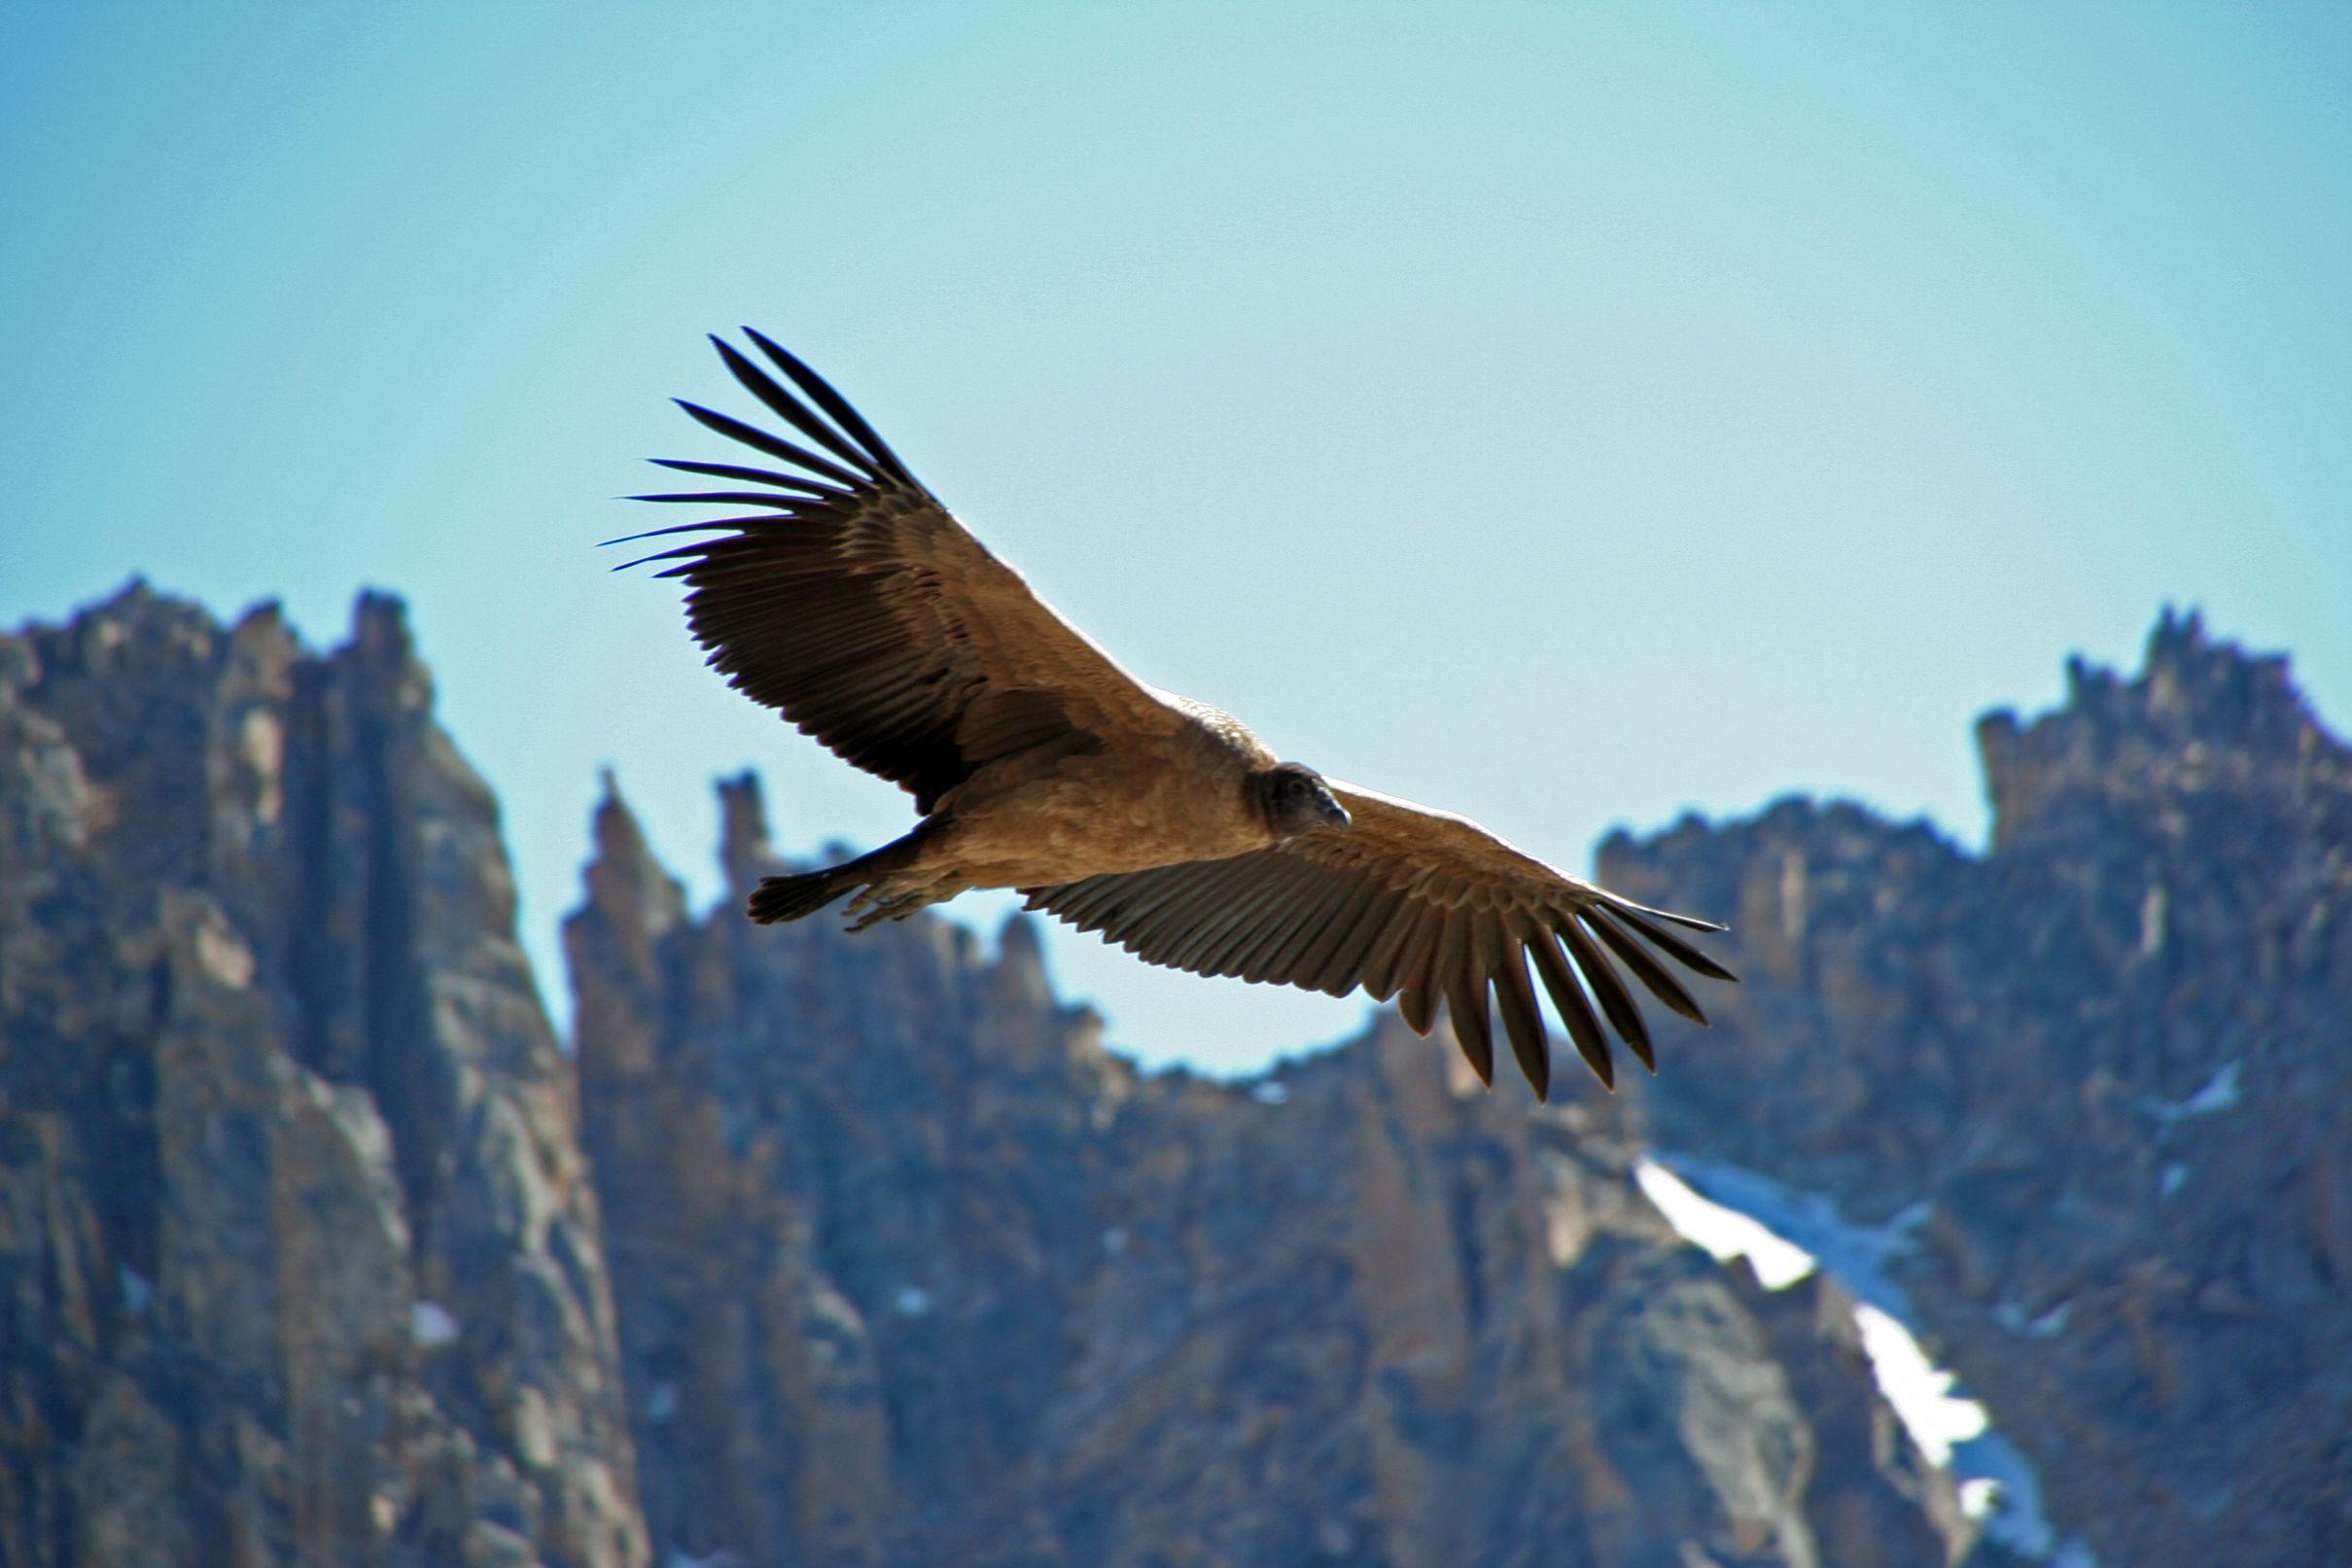 Cute Andean Condor photo and wallpaper .birdwallpaper.com